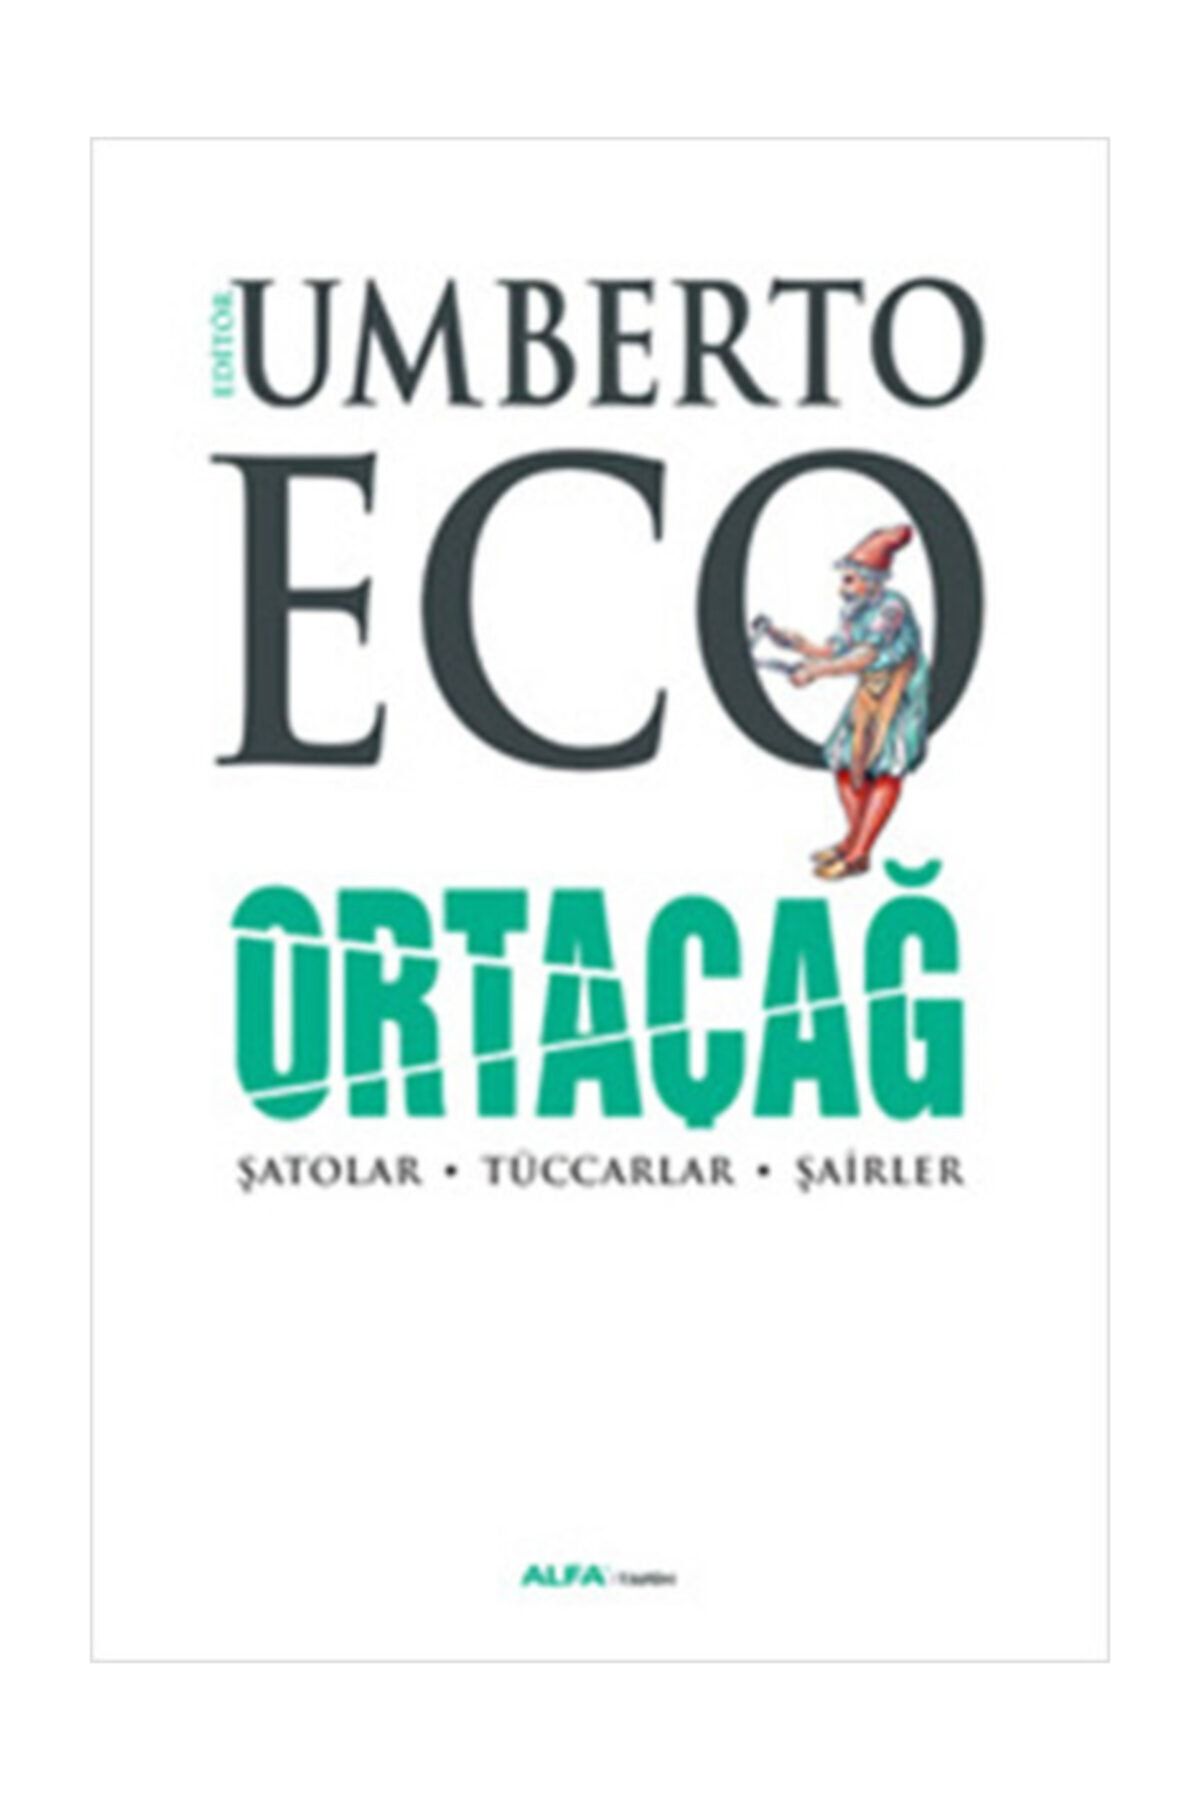 Alfa Yayınları Ortaçağ 3. Cilt Umberto Eco